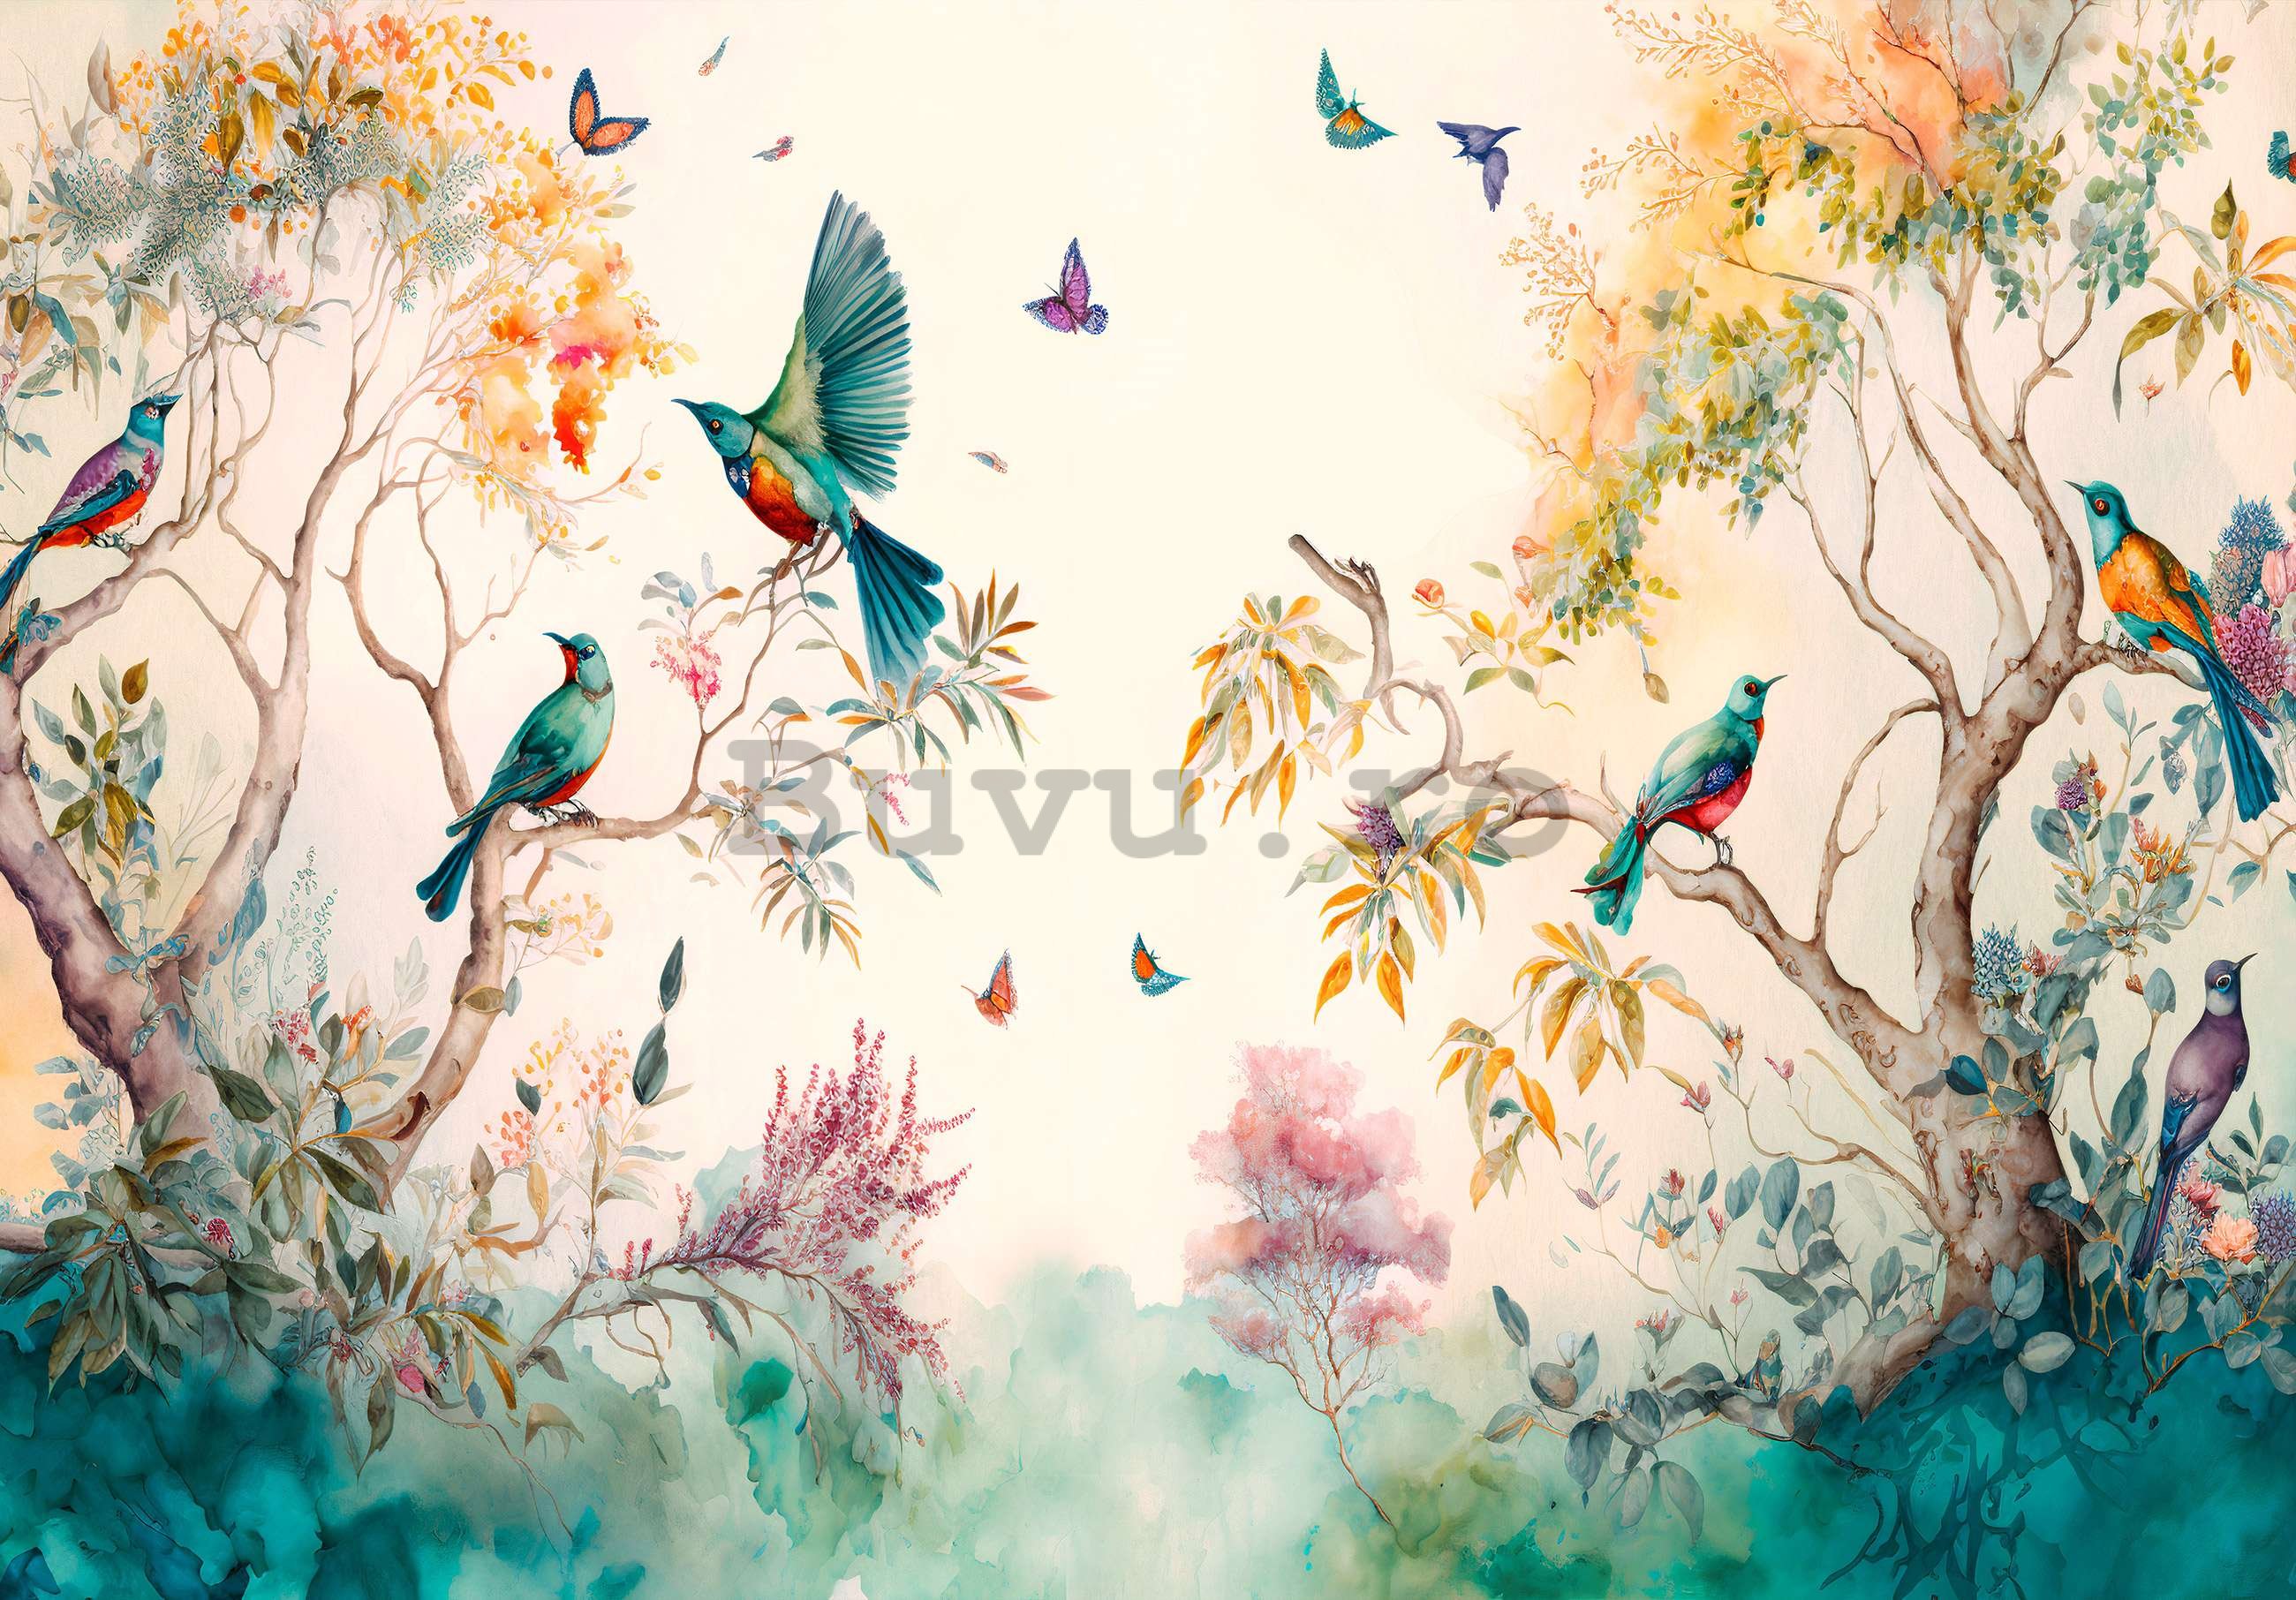 Fototapet vlies: Păsări în copaci (pictate) - 416x254 cm